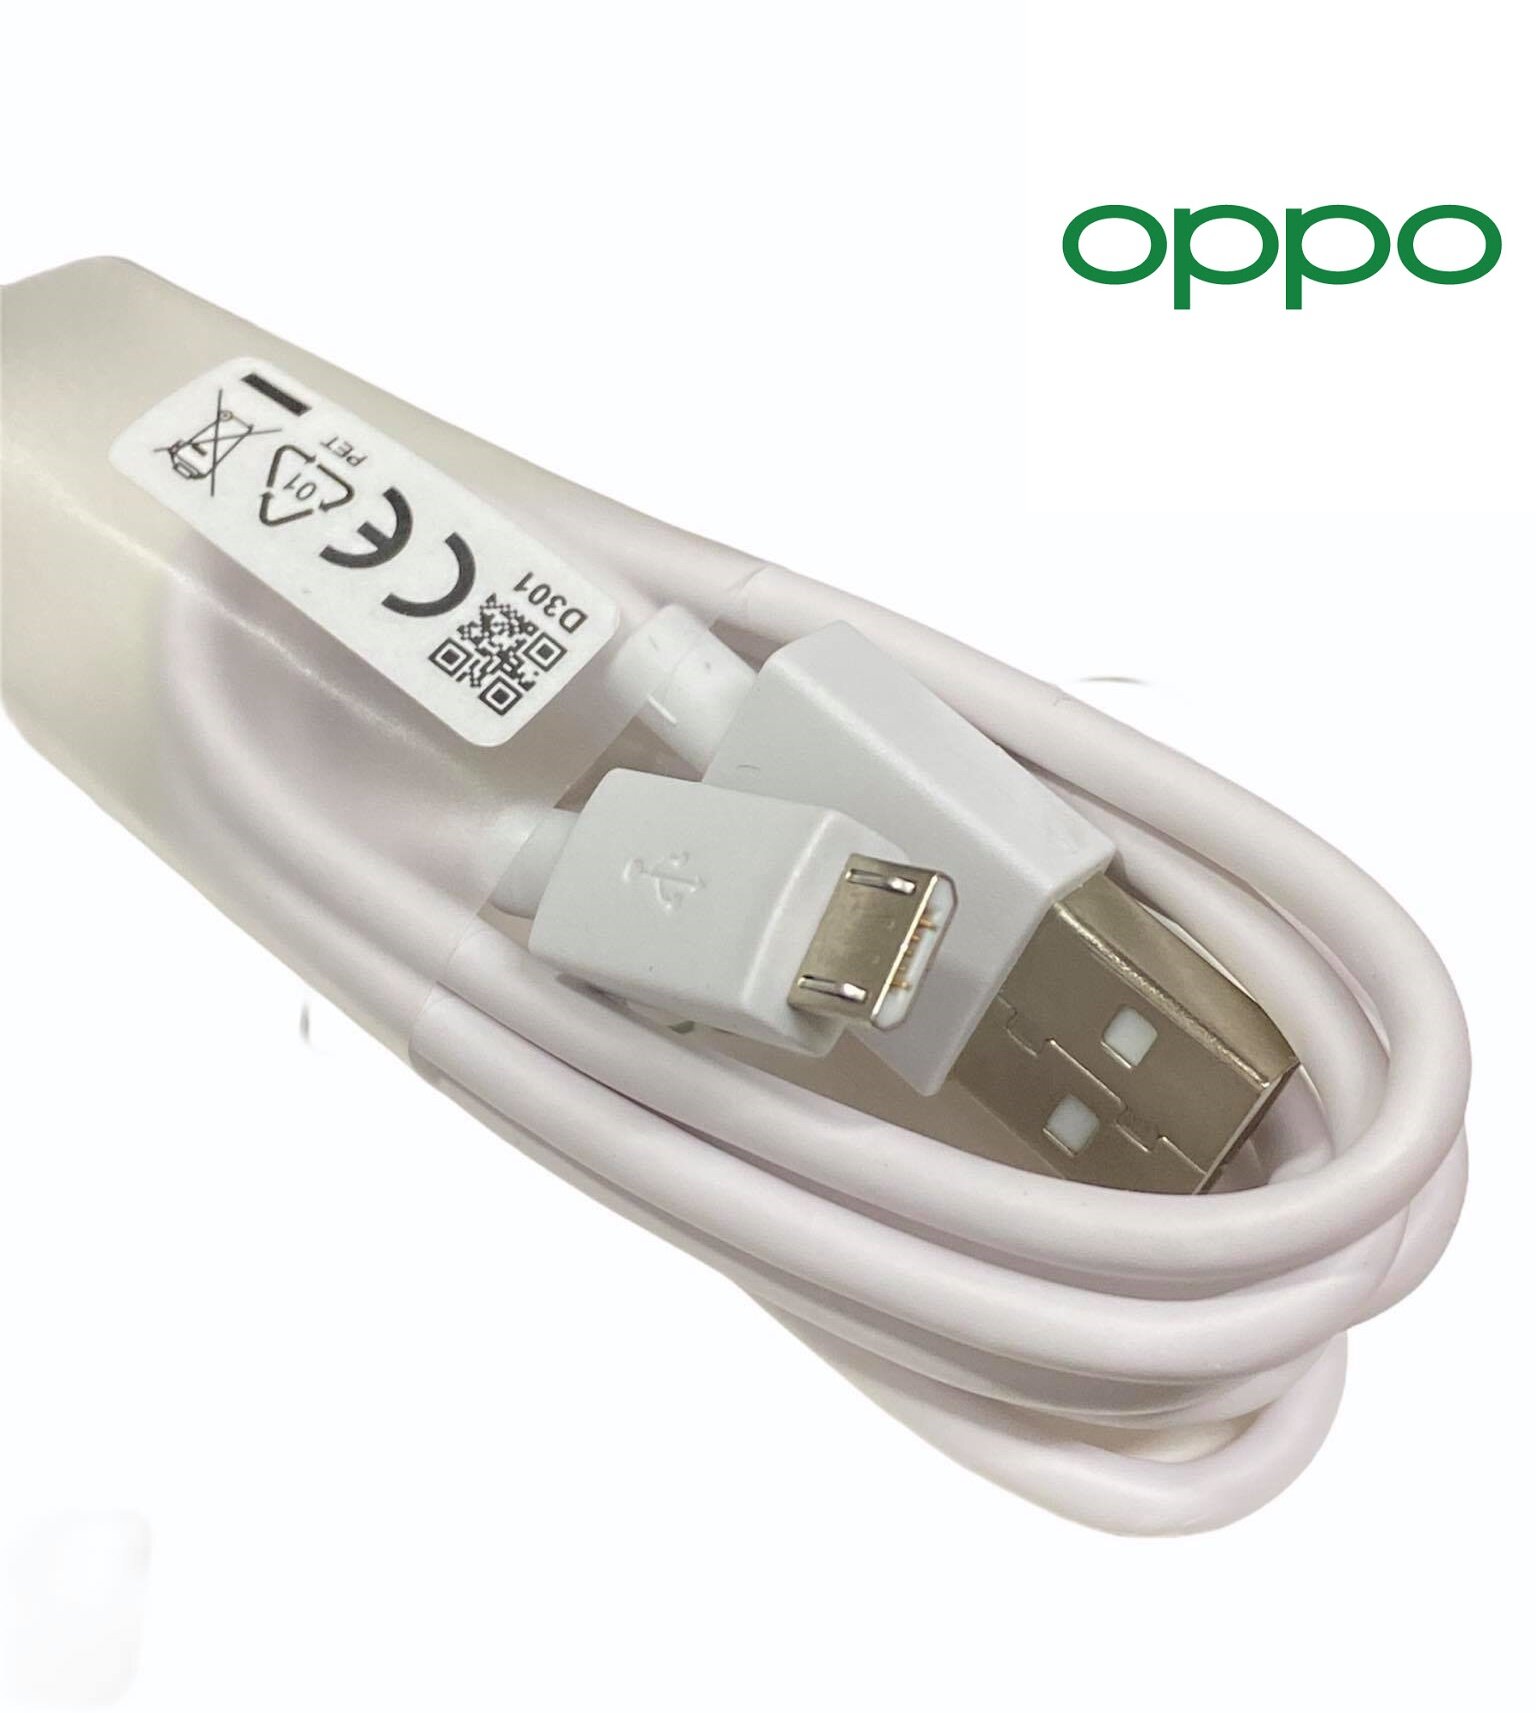 สายชาร์จแท้ OPPO ชาร์จเต็มแอมป์ ใช้ได้เช่น  F5/F7/A3S/A31/A37/A5S/F1/A7 A37,A71,A83,A57,A77,A3S,A5S,A1K และอีกหลายรุ่นที่รองรับ หัว Micro USB